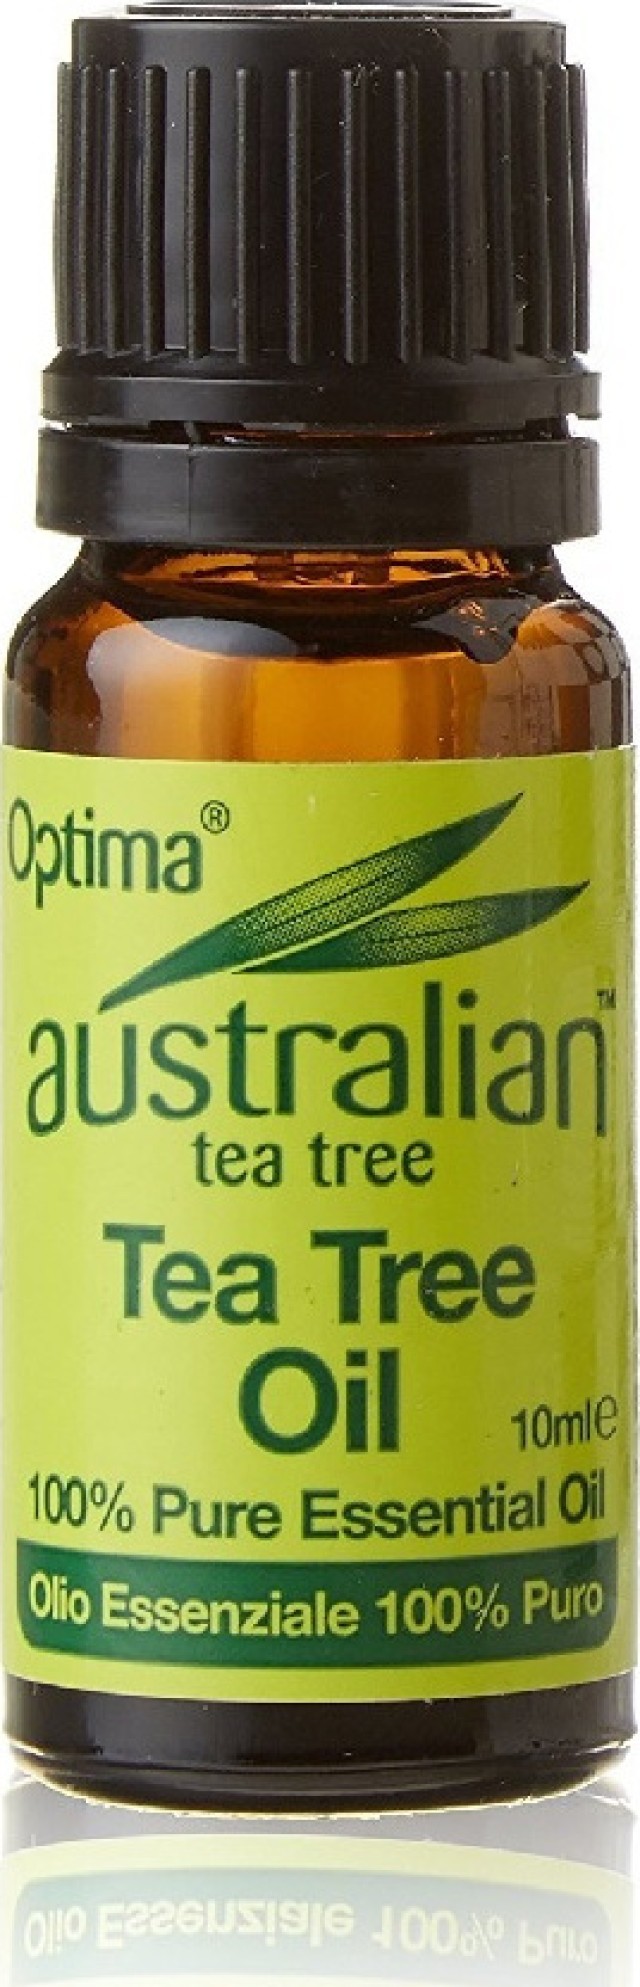 Optima Australian Tea Tree Antiseptic Oil, 10ml